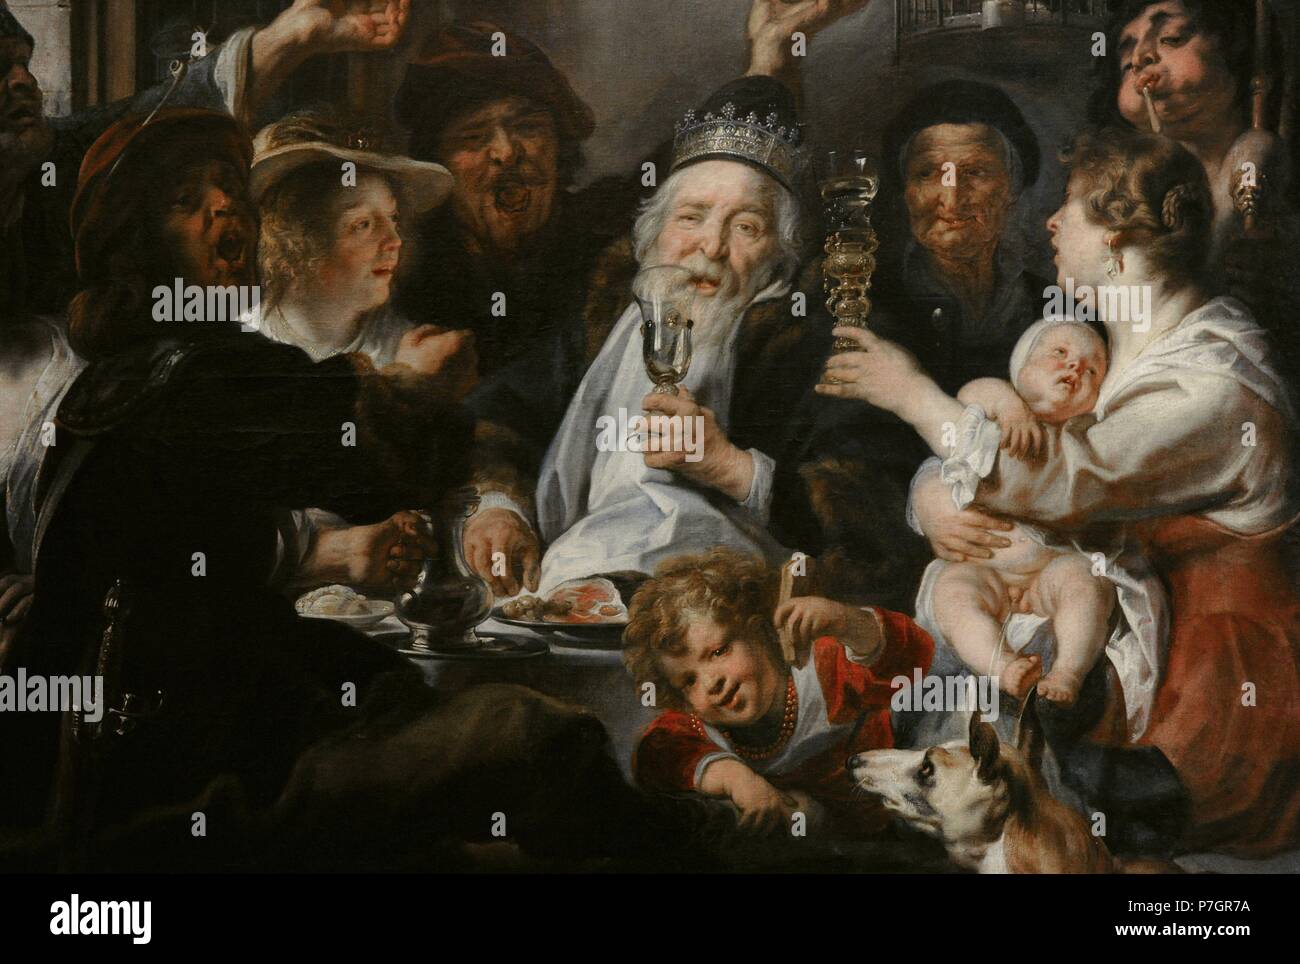 Jacob Jordaens (1593-1678). Flämischer Maler. Die Bean-König, 1638. Öl auf Leinwand. Detail. Die Eremitage. Sankt Petersburg. Russland. Stockfoto